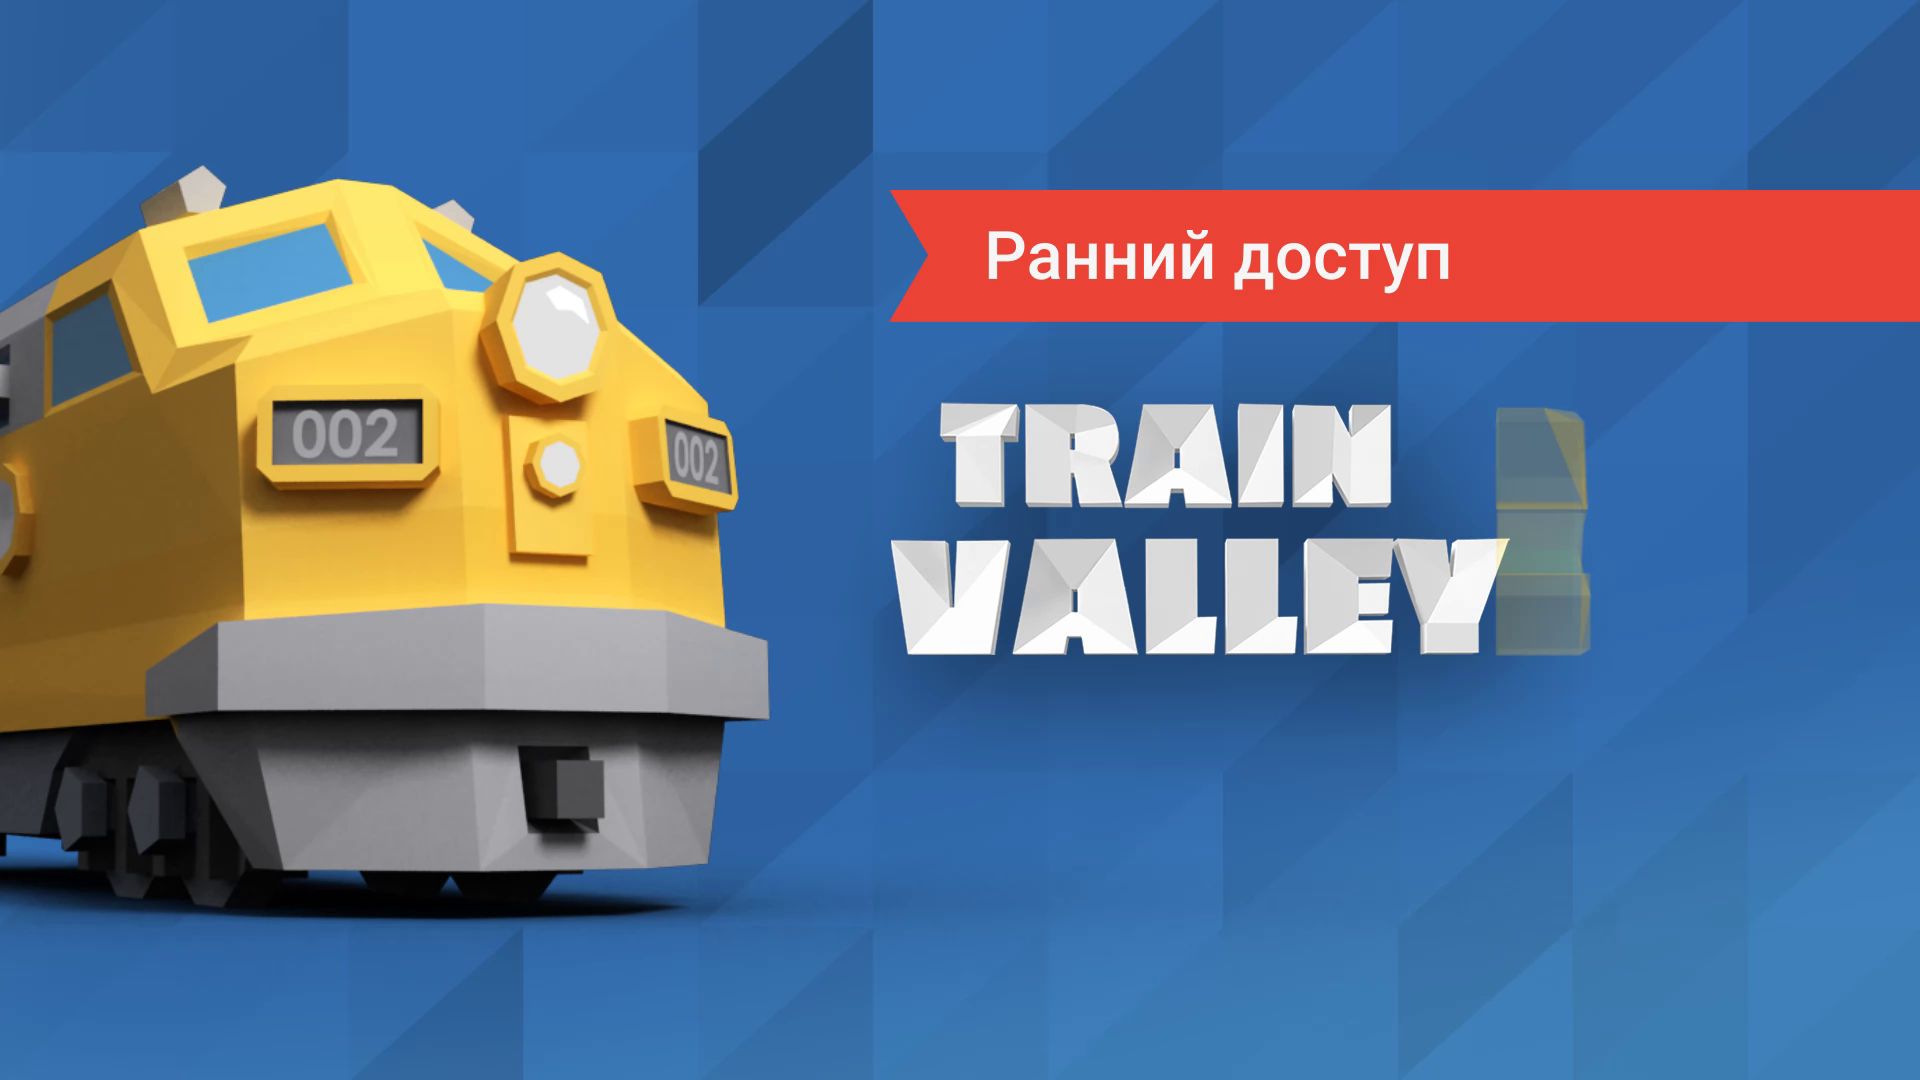 Train Valley 2: Ранний доступ